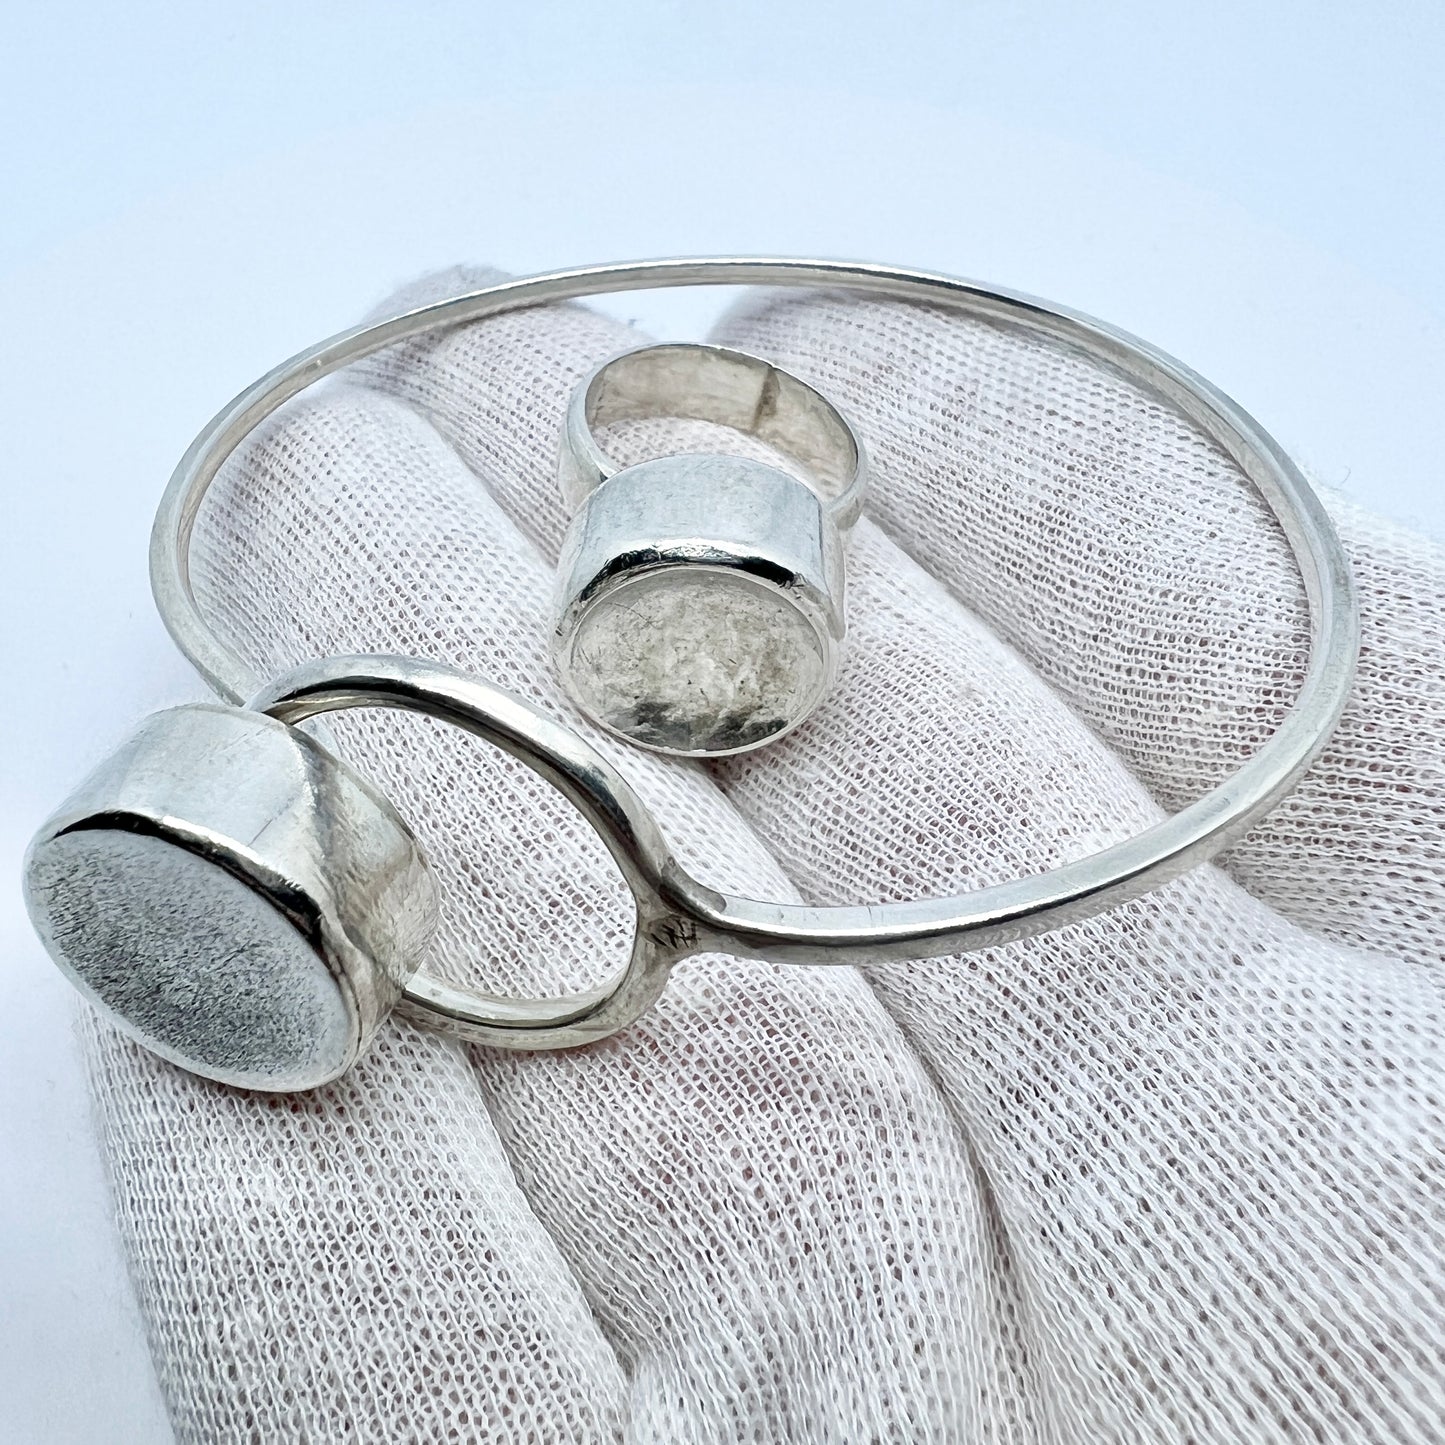 Asian, Vintage Modernist Sterling Silver Bracelet and Ring.